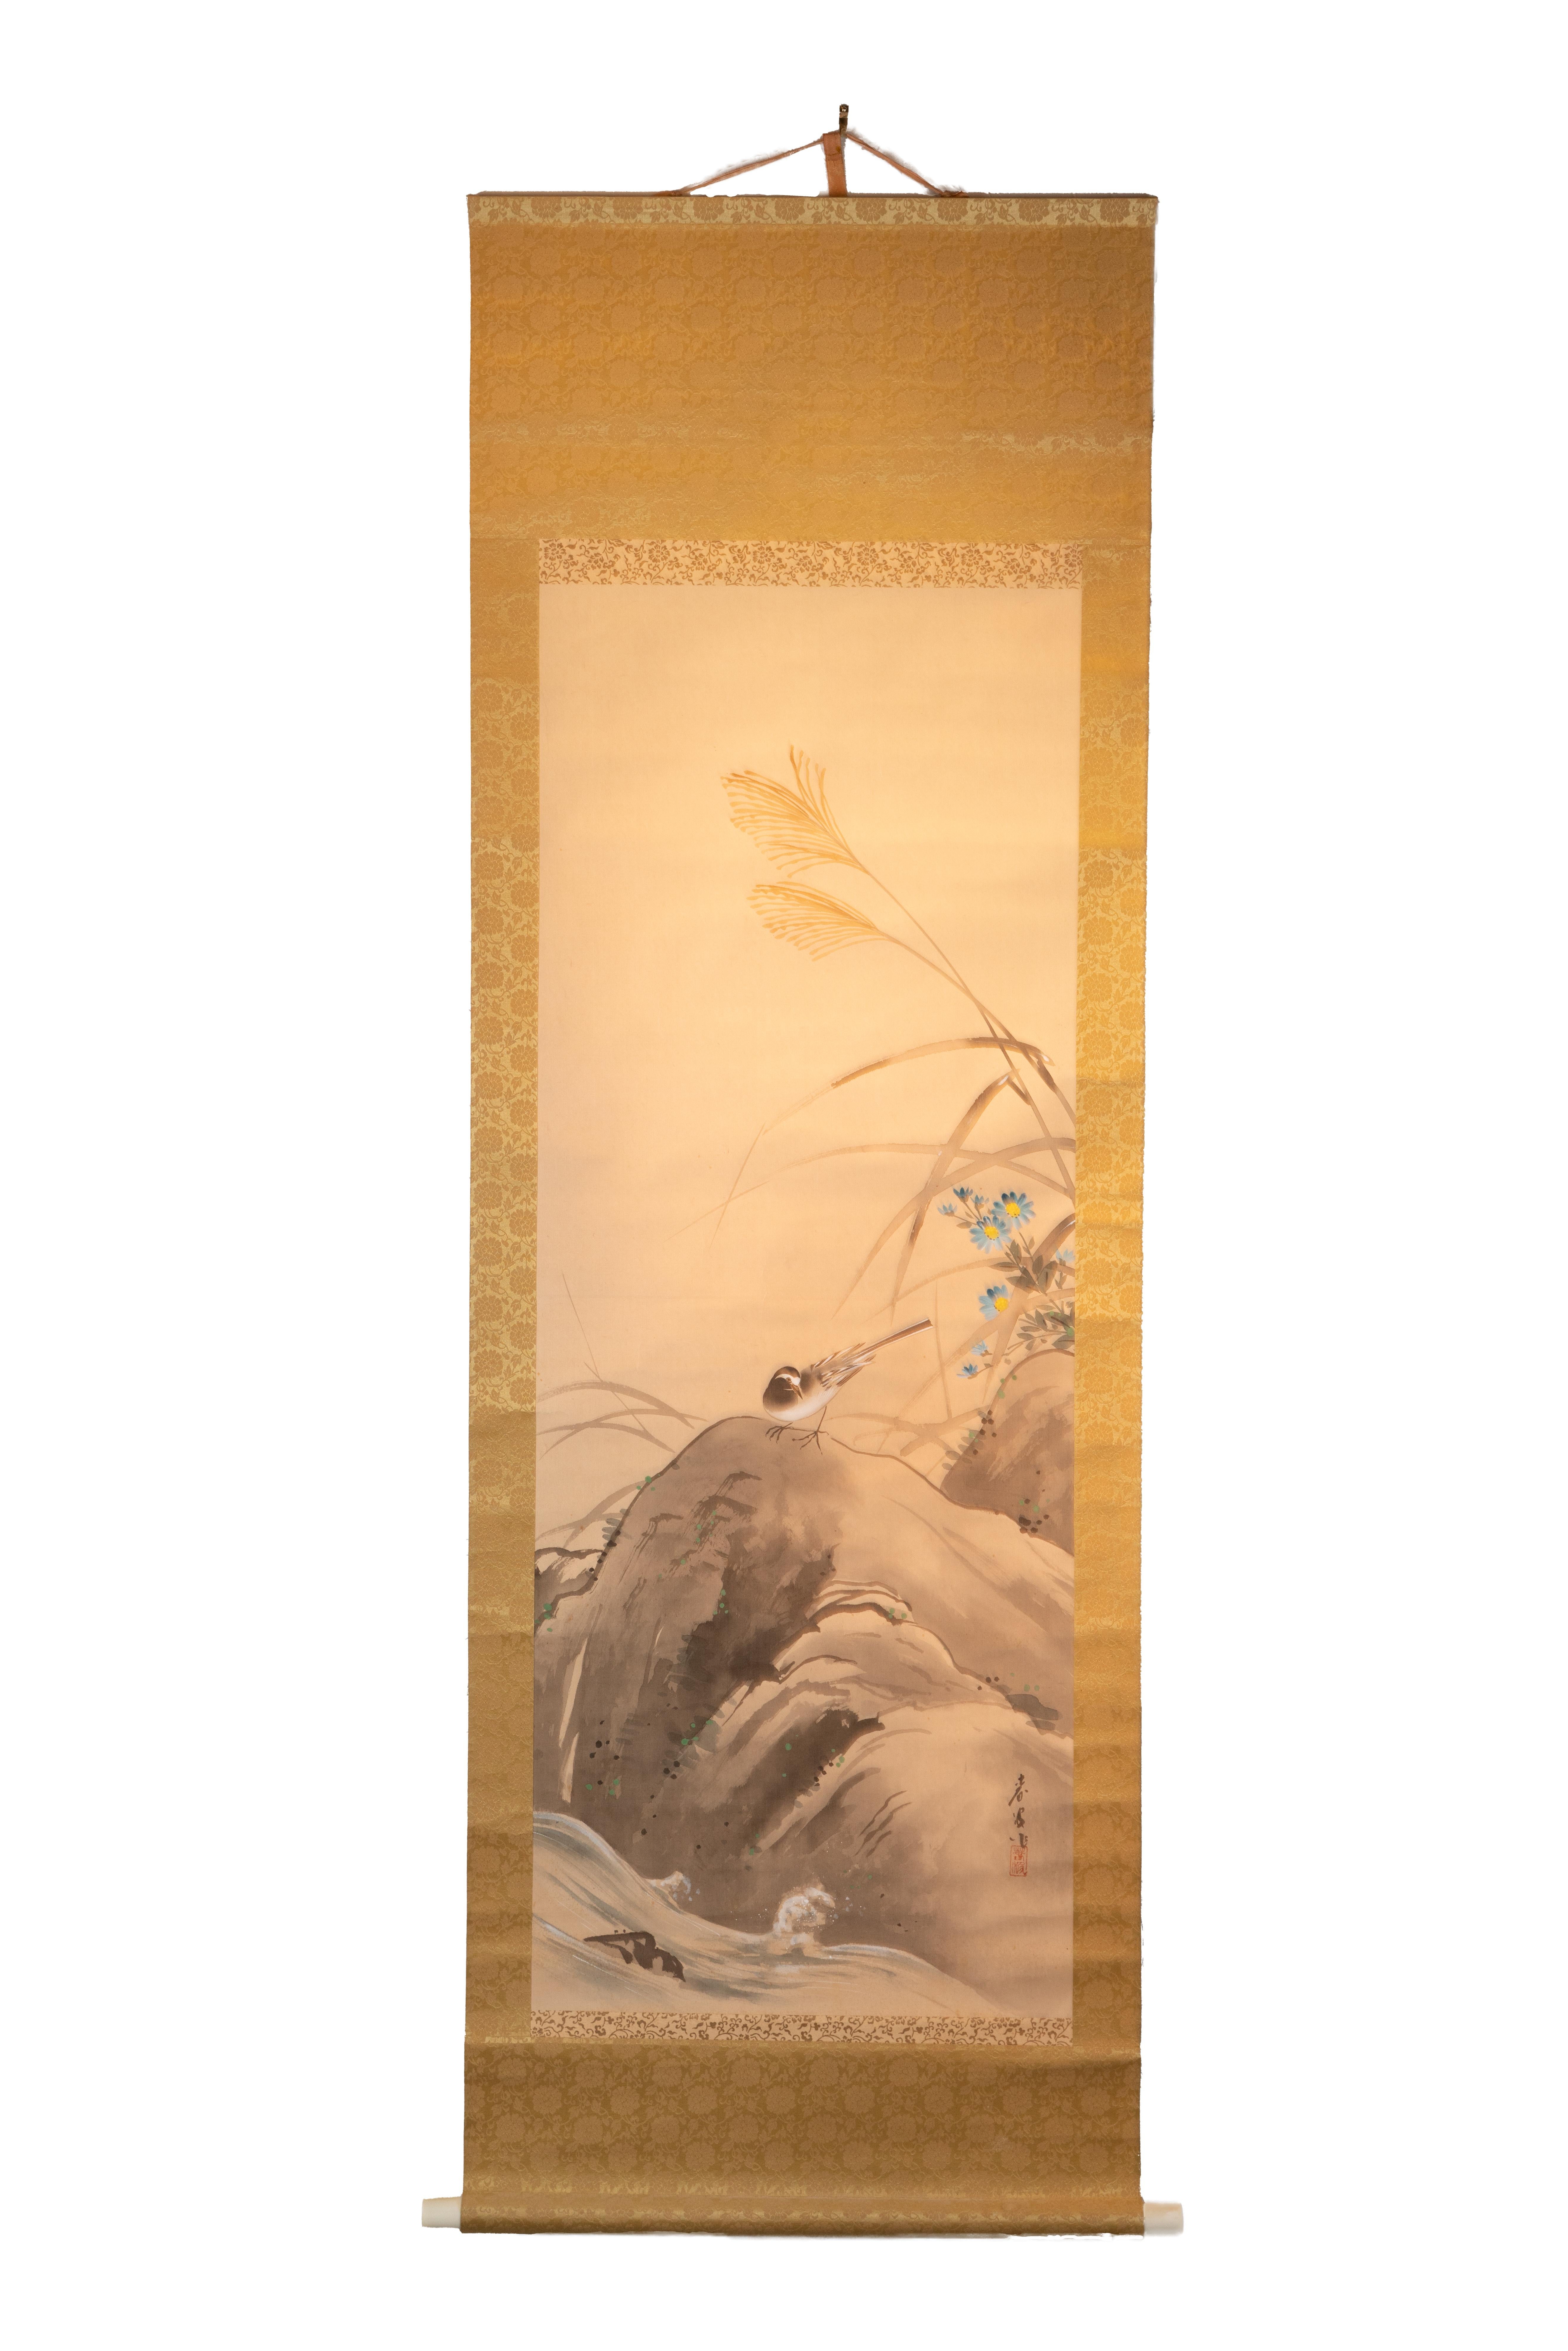 Ce rouleau antique chinois de 59" x 20" représente une scène simple et sereine d'un oiseau sur un rocher. L'oiseau se tient sur le rocher, qui est beaucoup plus grand que lui. Le corps de l'oiseau fait face au spectateur mais est légèrement tourné